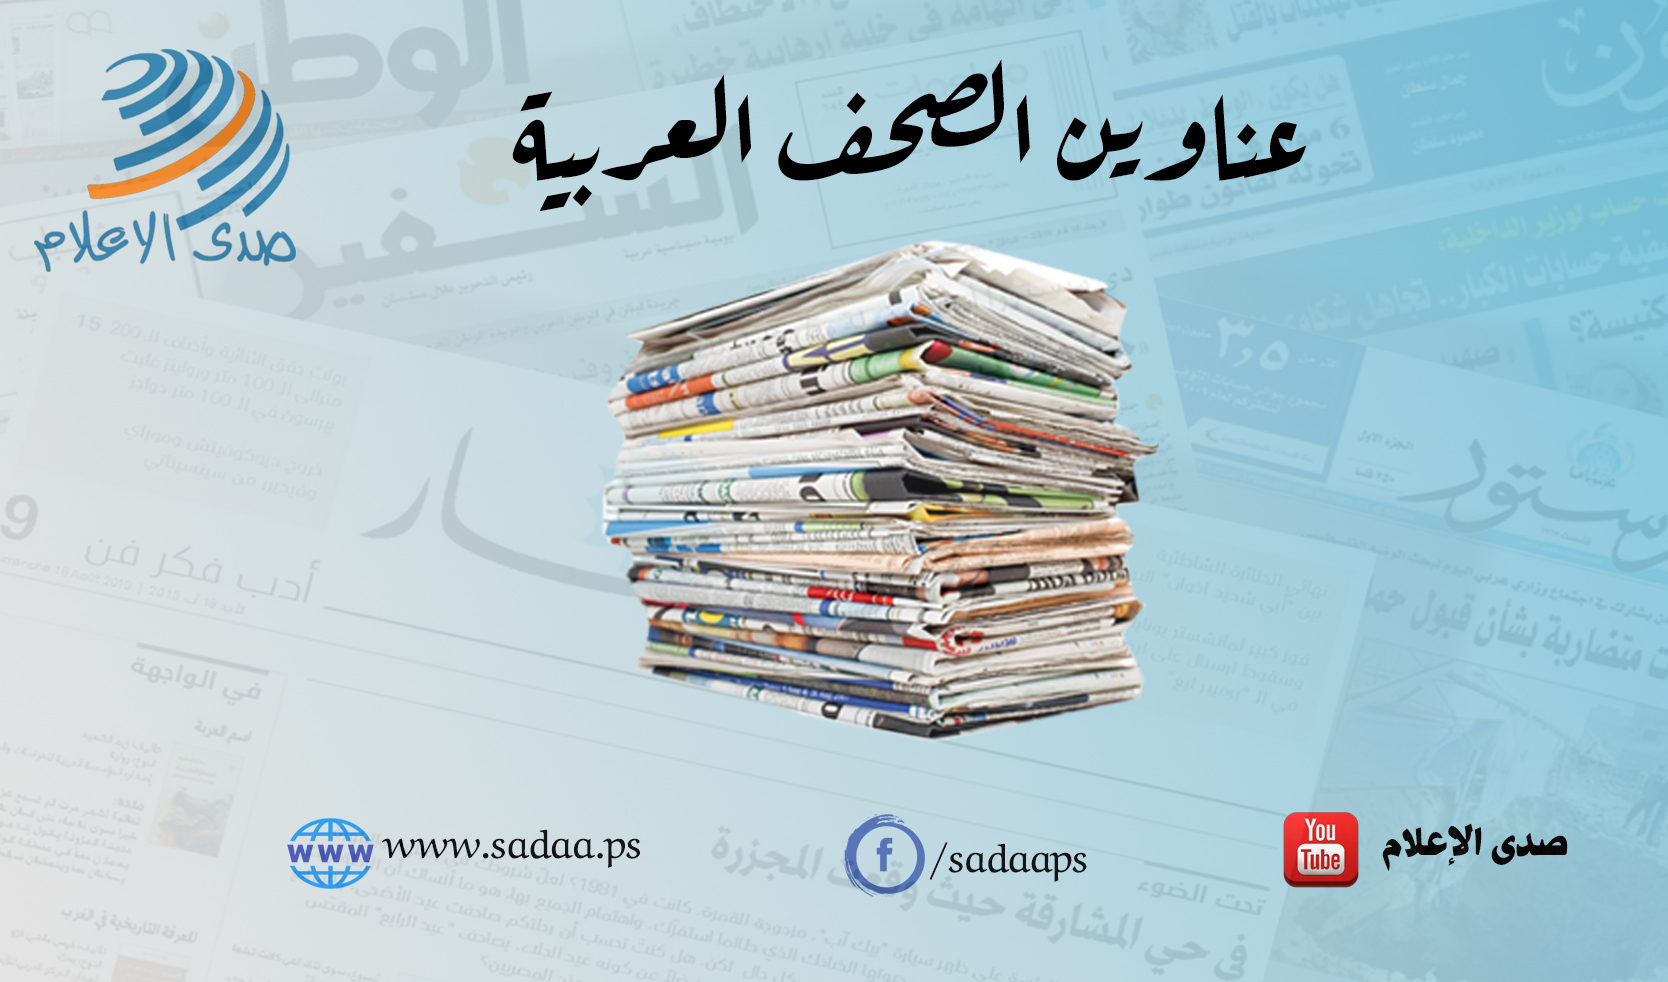 أبرز عناوين الصحف العربية حول الشأن الفلسطيني